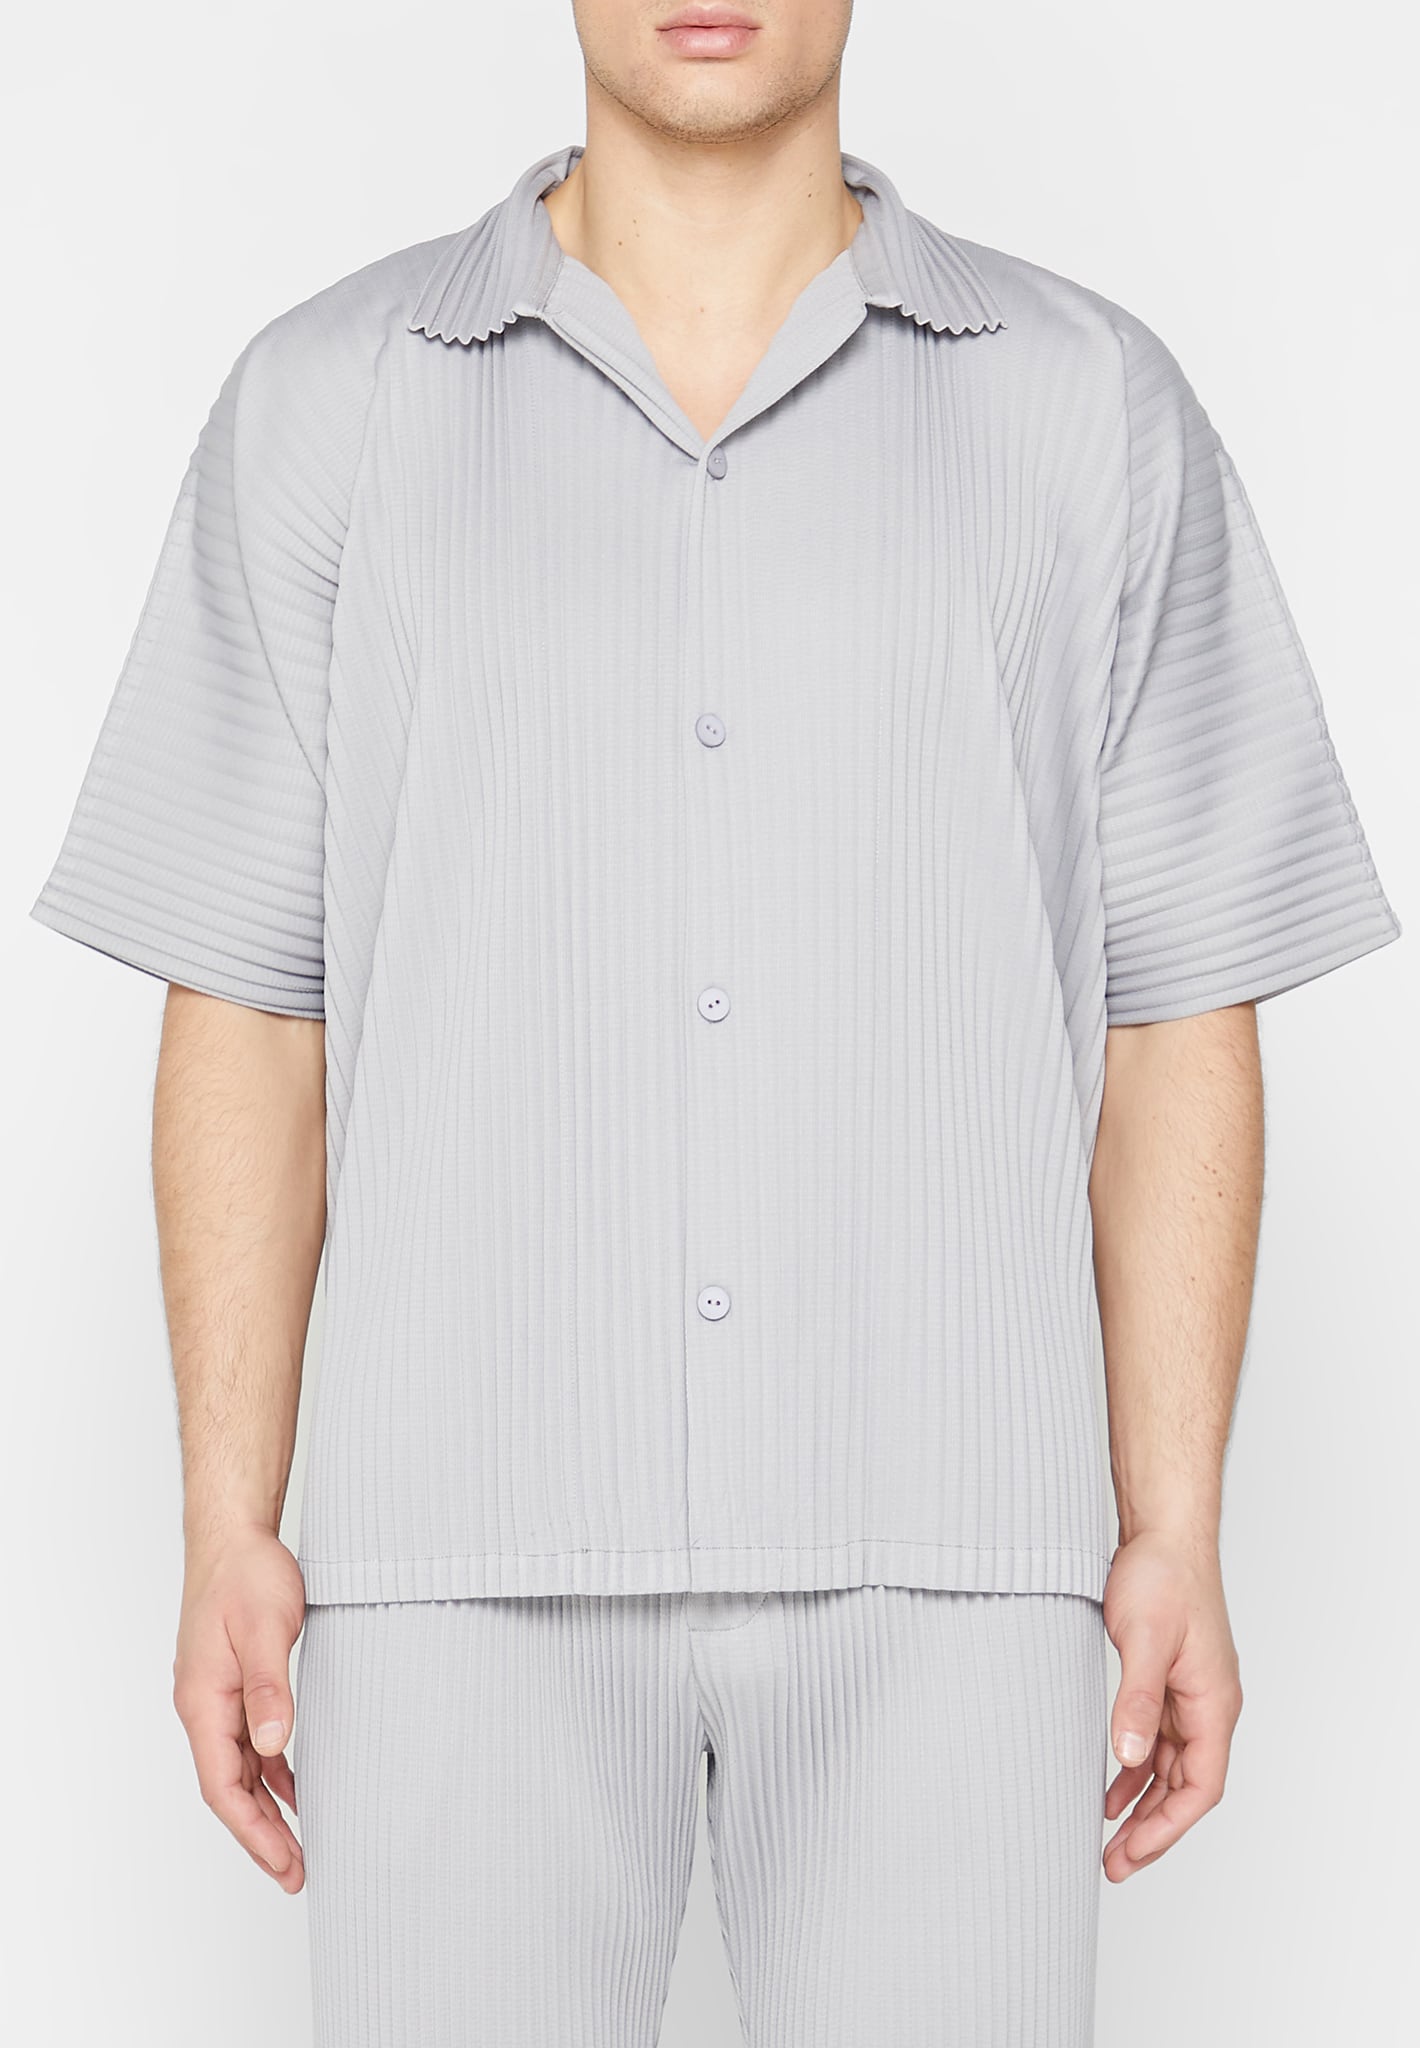 pleated-shirt-iced-grey